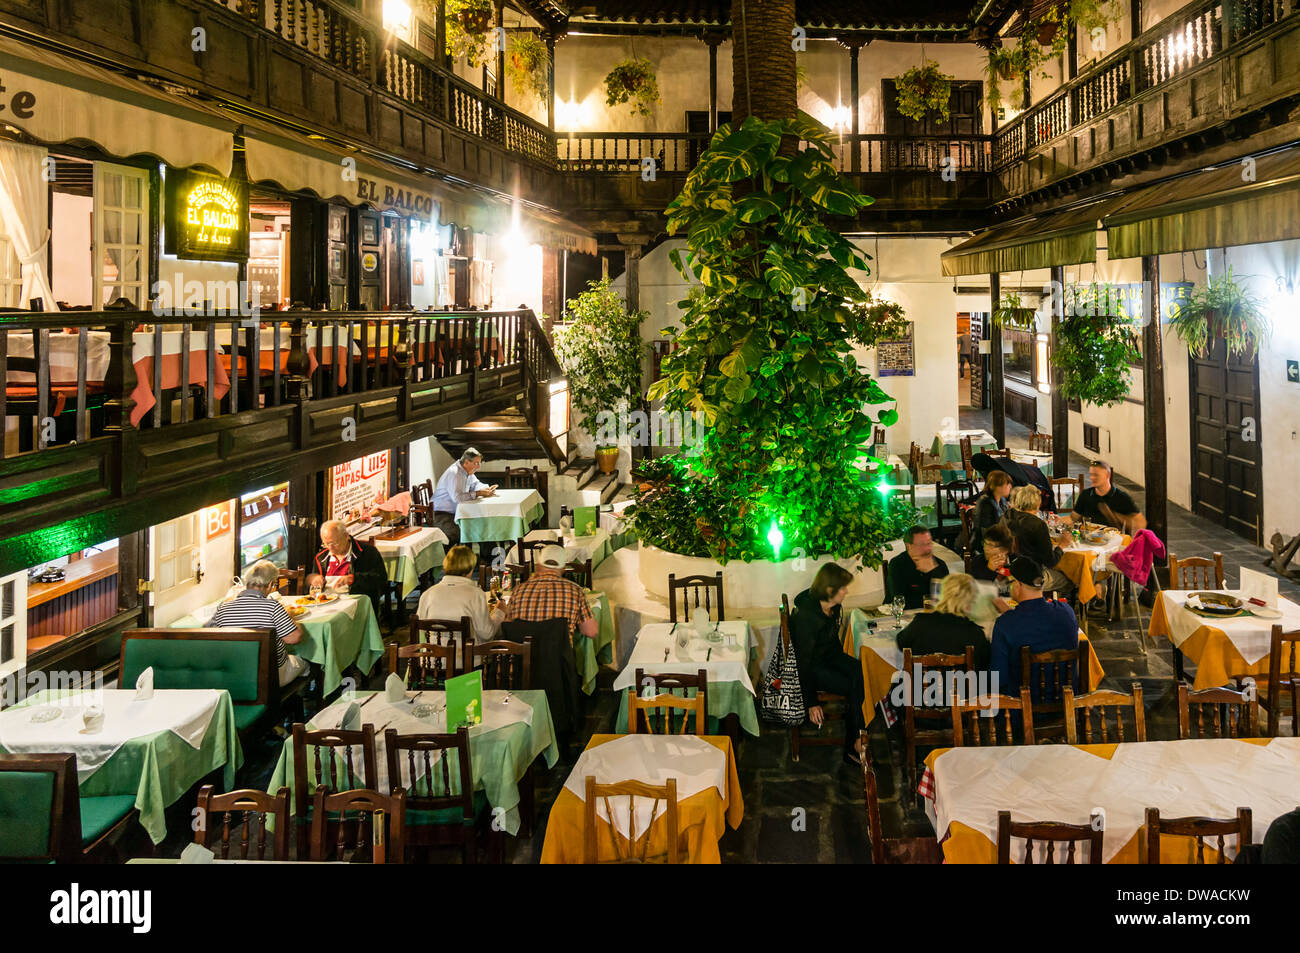 Restaurants dans la région de Patio, El Rincon à Plaza del Charco, bâtiment historique de 17. Siècle, Puerto de la Cruz, Tenerife Banque D'Images